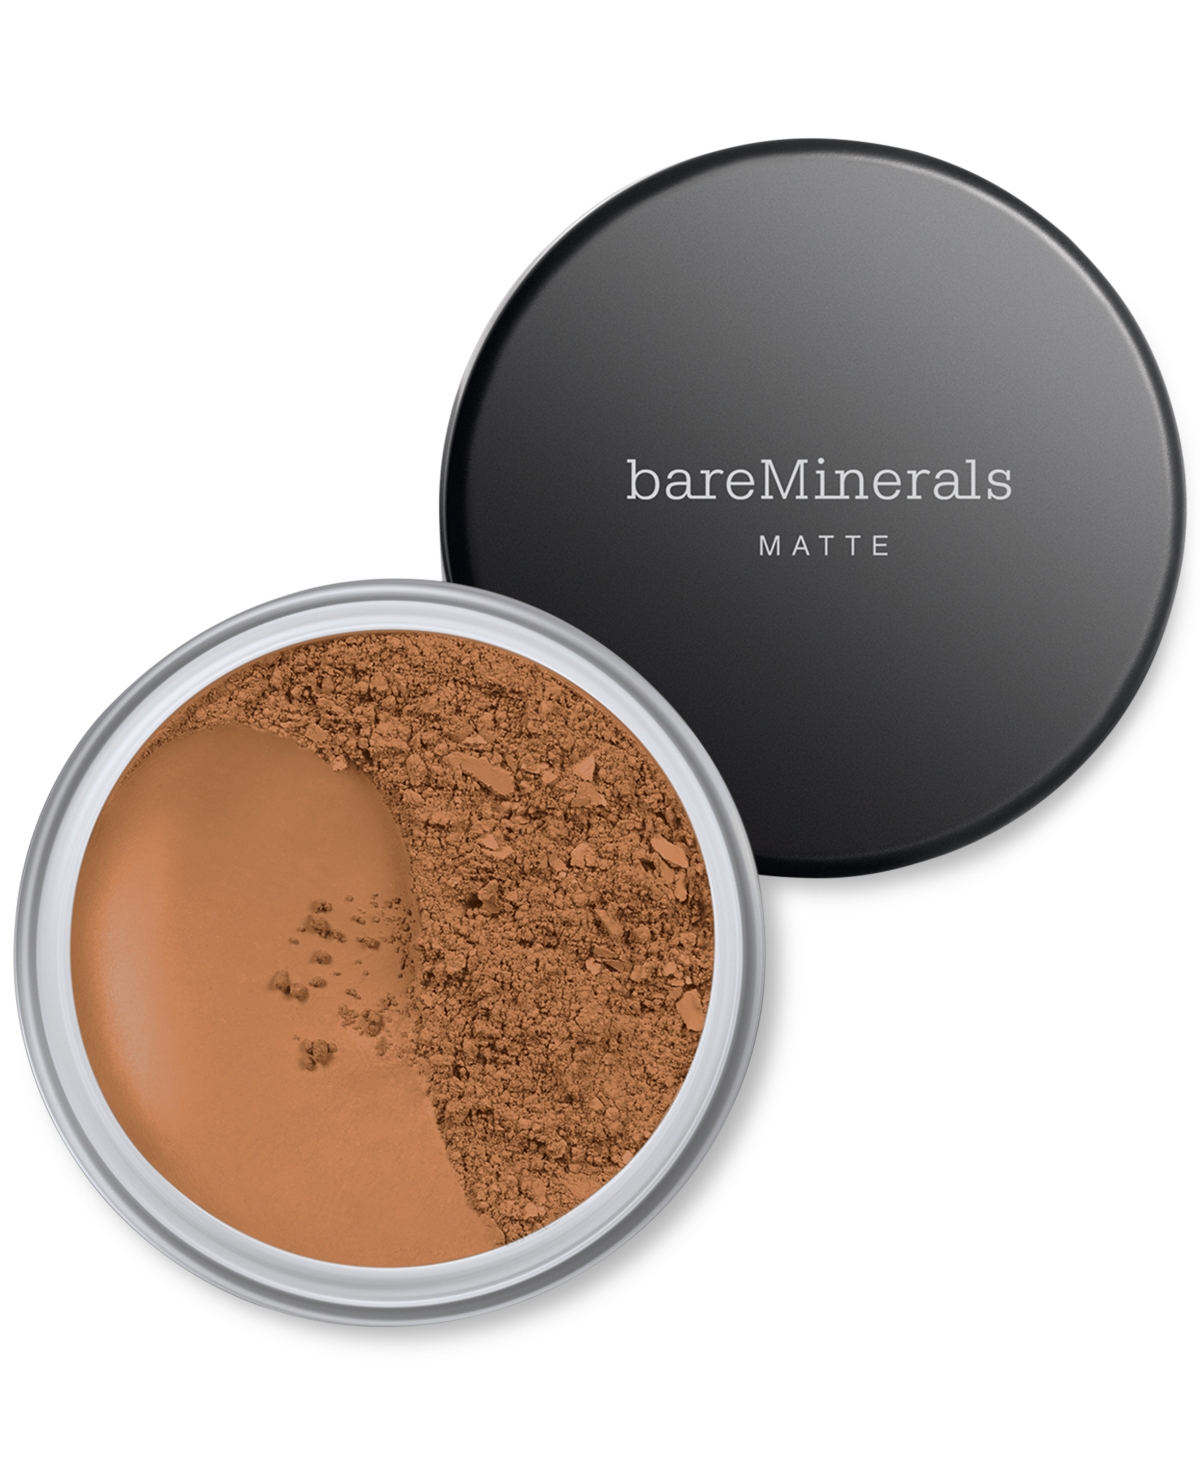 Bareminerals Matte Loose Powder Foundation Spf 15 In Golden Deep  - For Dark Skin With Neutra